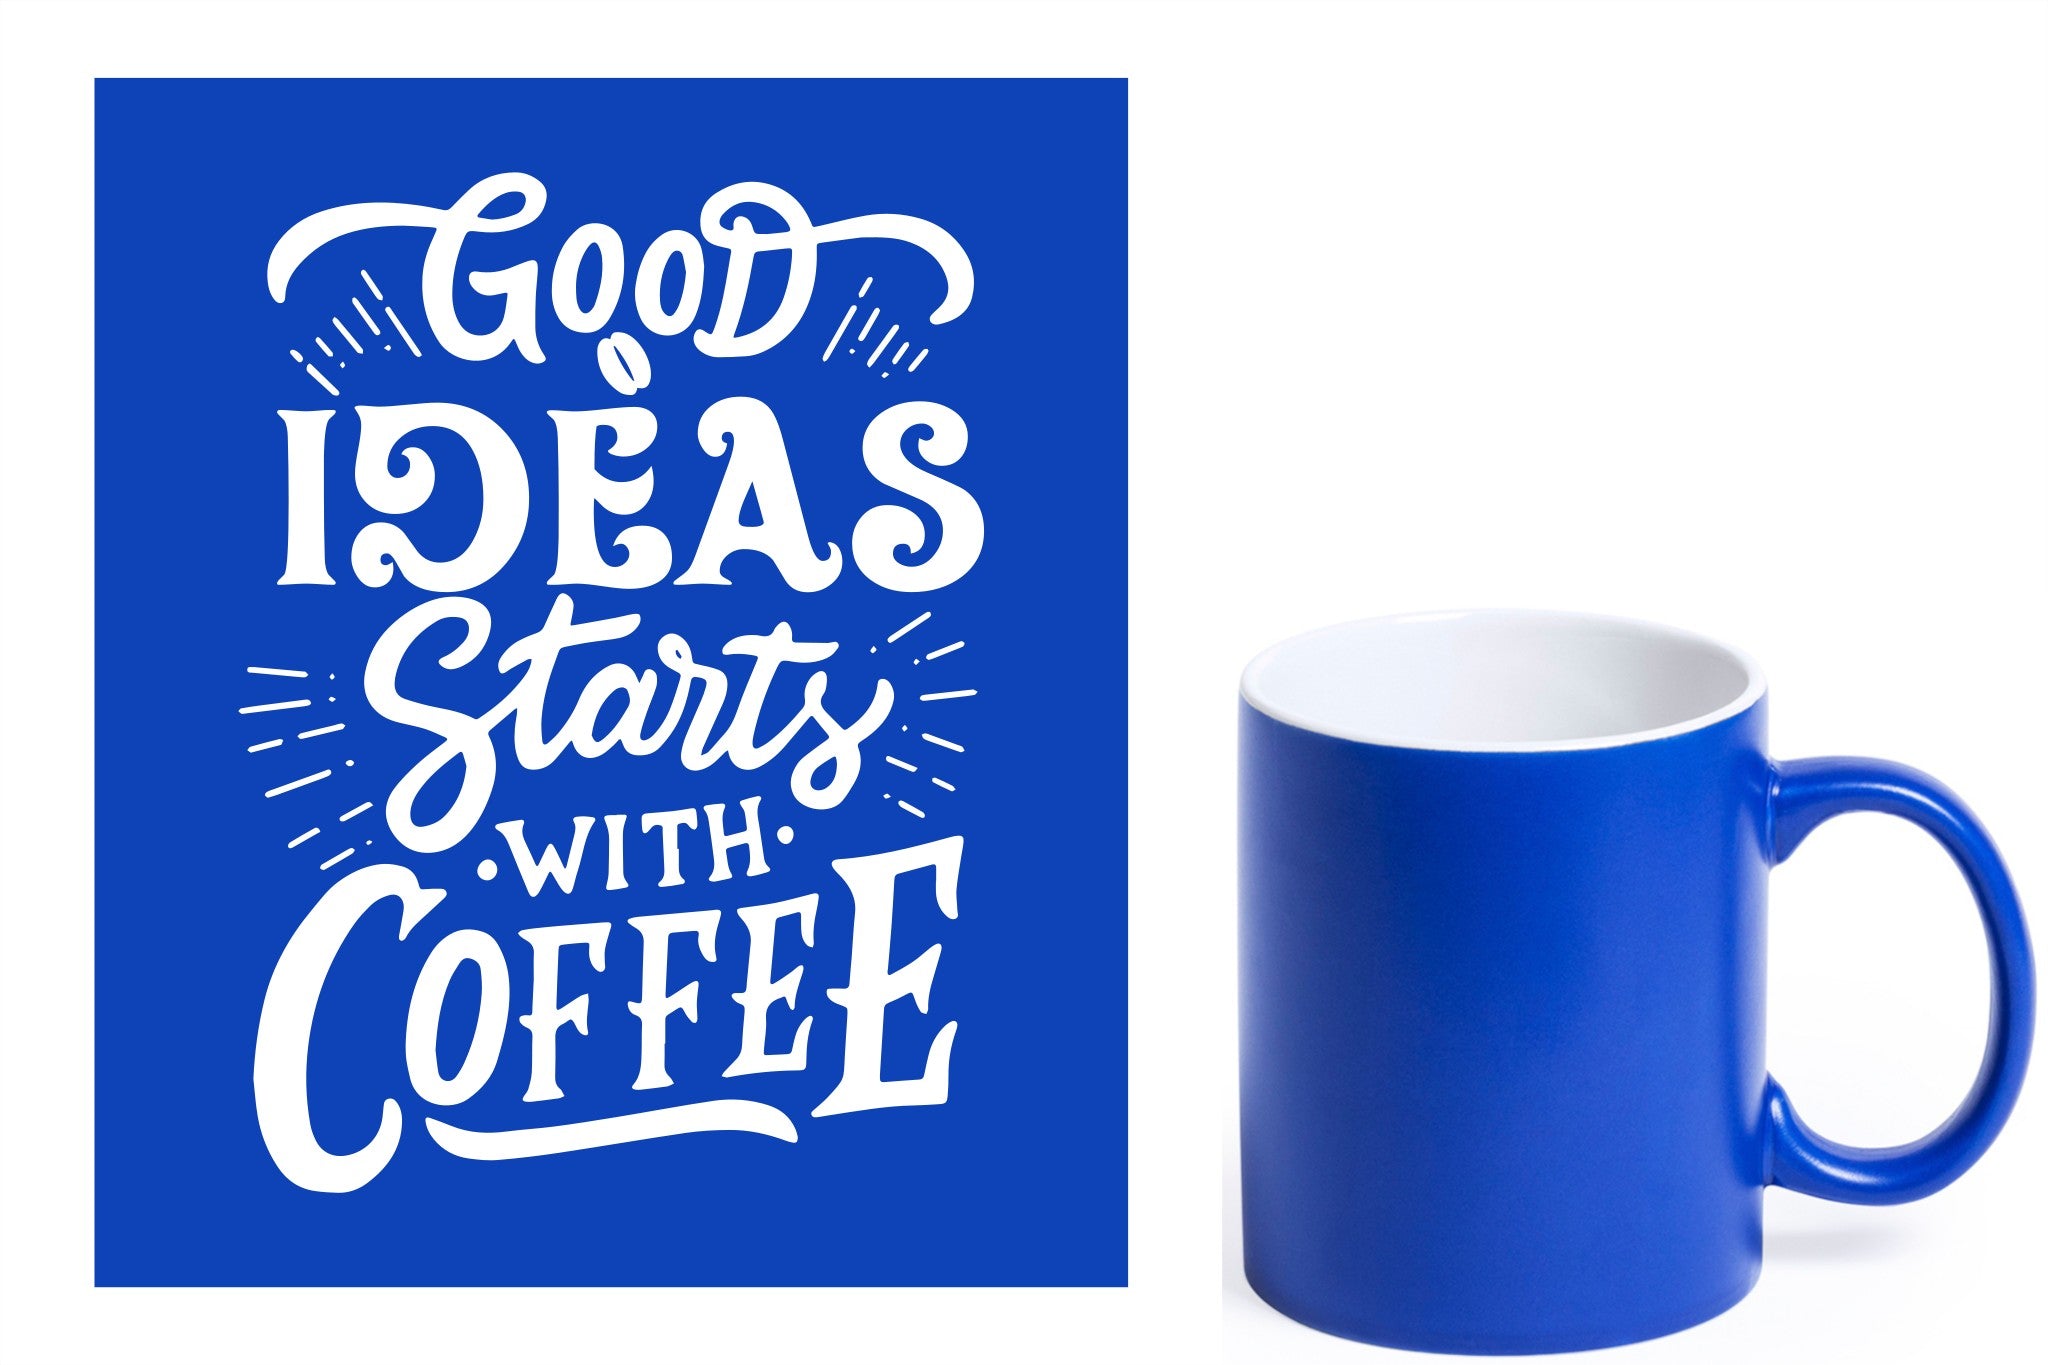 Blauwe keramische mok met witte gravure  'Good ideas starts with coffee'.